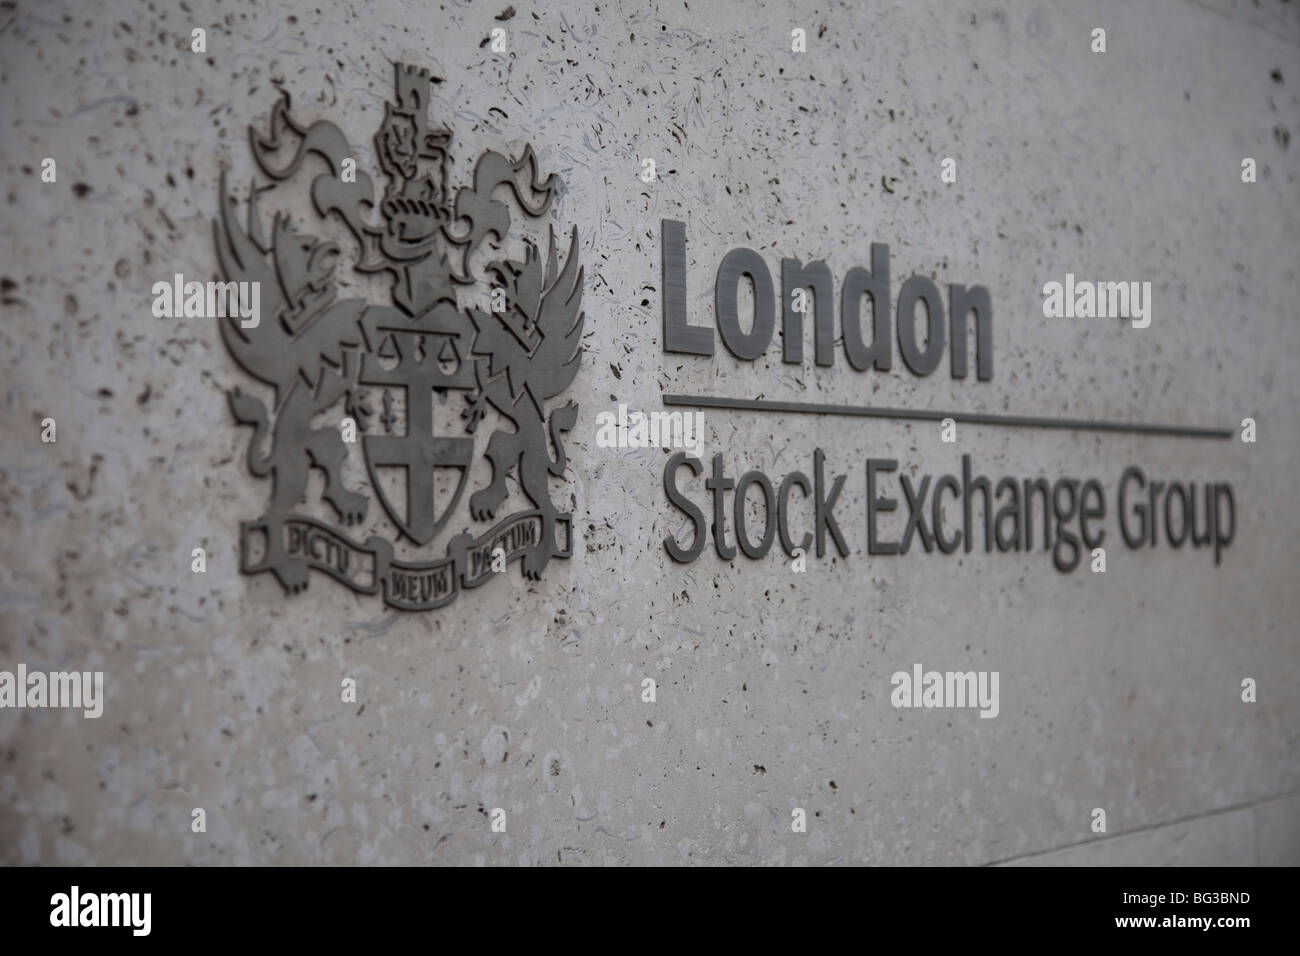 Inscrivez-vous à l'extérieur de la London Stock Exchange Group bureaux dans la ville de Londres. Banque D'Images